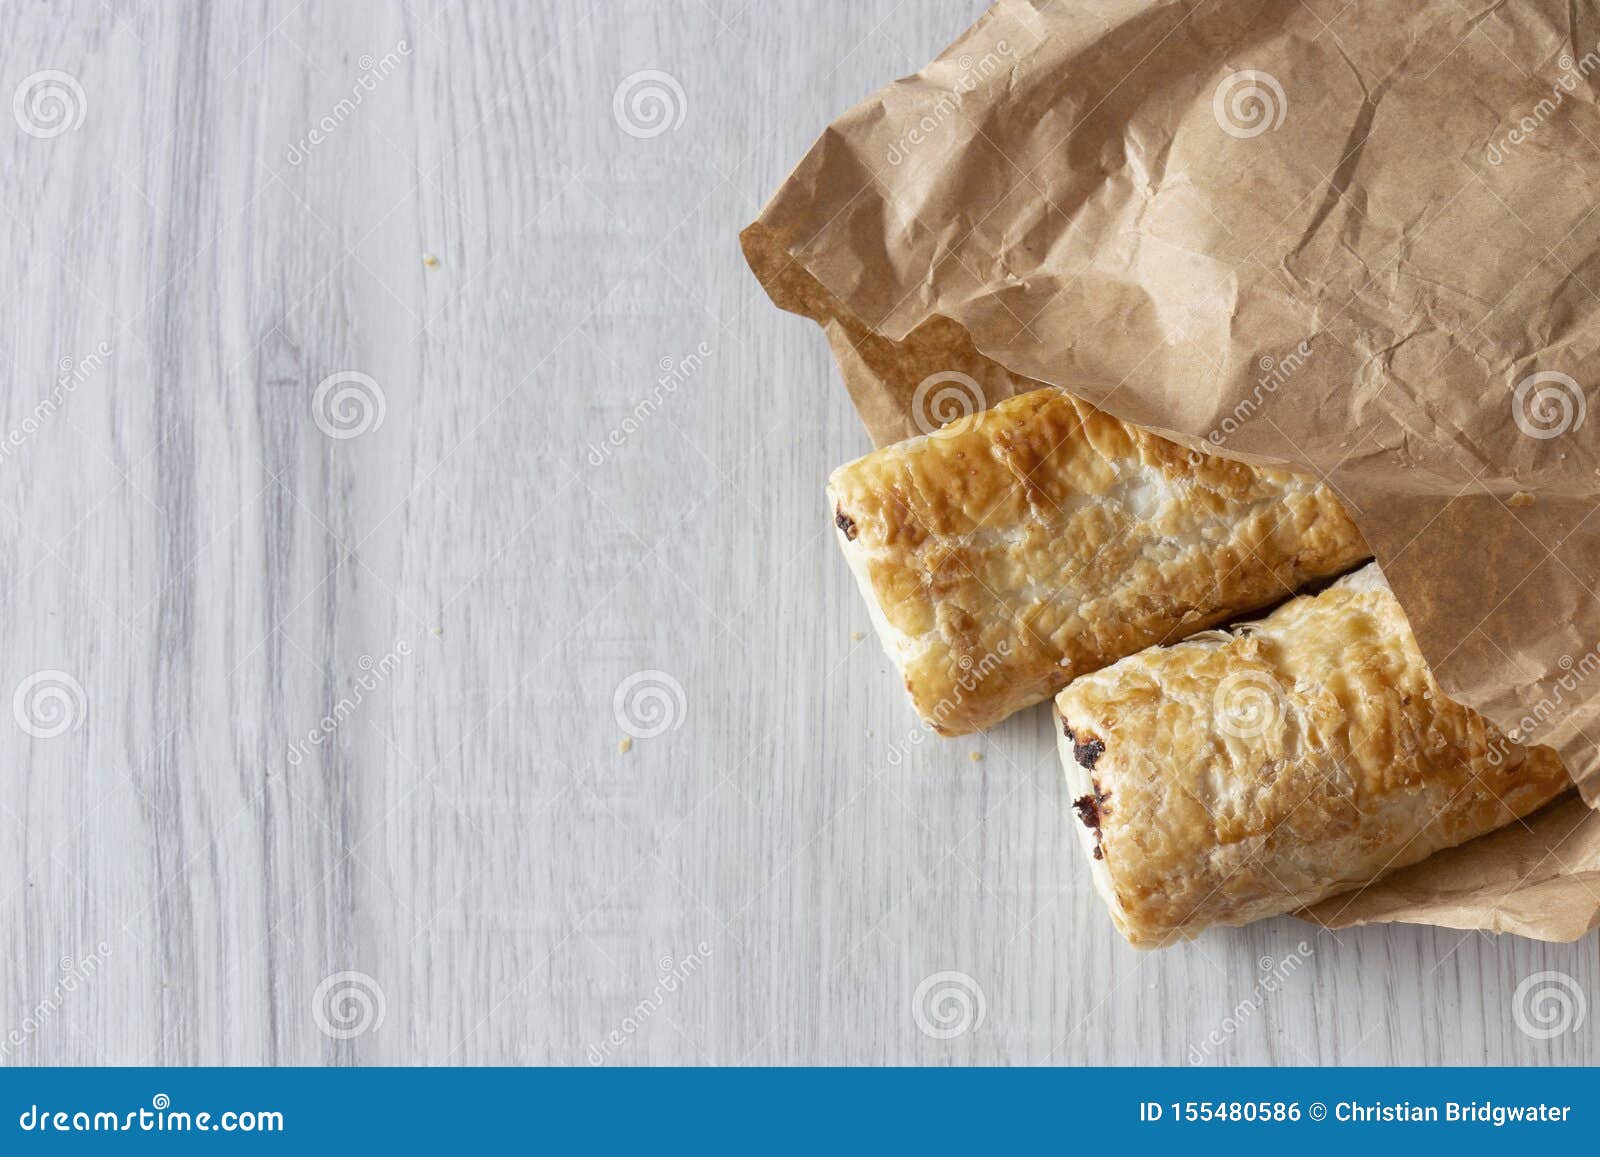 腊肠卷，酥皮点心包裹了香肠，在毯子，在面团的香肠饼的油煎的香肠 库存图片 - 图片 包括有 营养, 贝多芬: 136379229